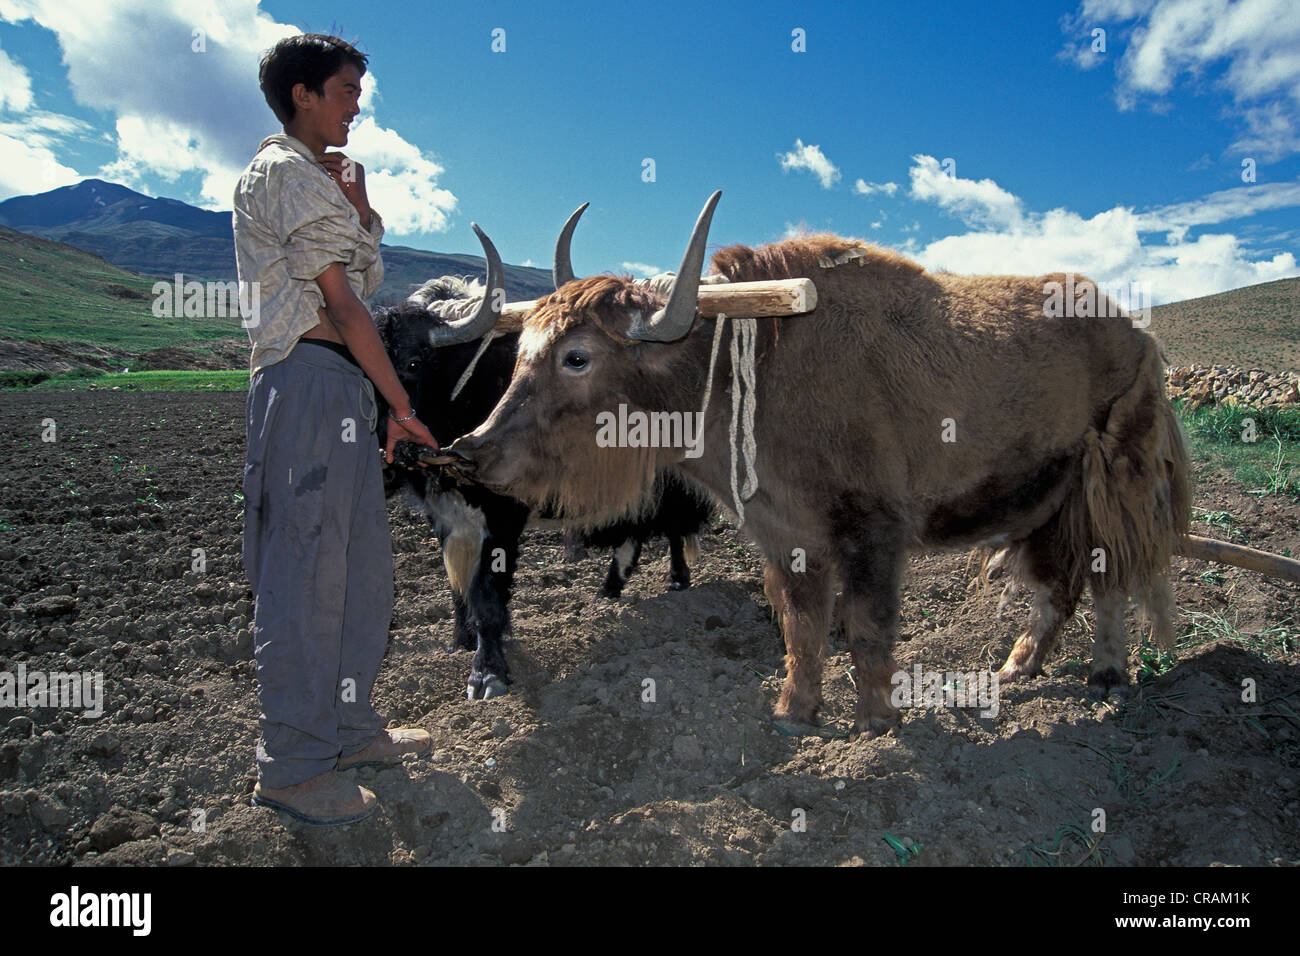 Agriculteur avec des yaks labourer un champ, Kibber, Spiti, Himachal Pradesh, Inde himalayenne, l'Inde du Nord, Inde, Asie Banque D'Images